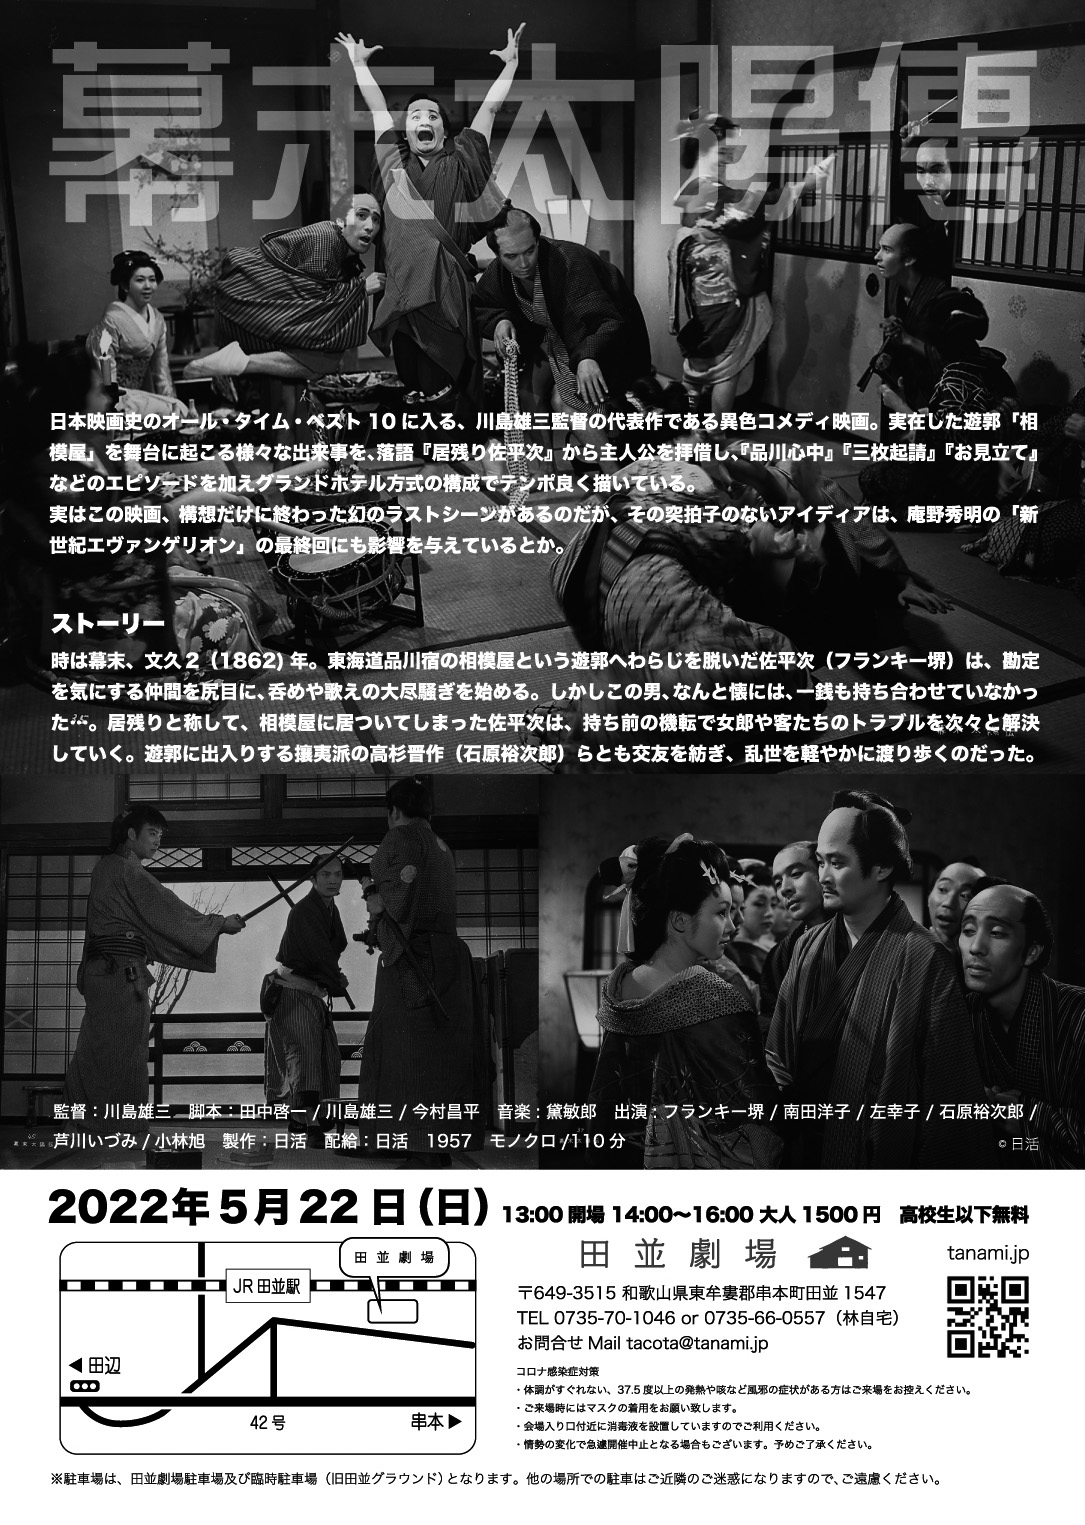 映画『幕末太陽傳』上映会 2022年5月22日(日) - 田並劇場